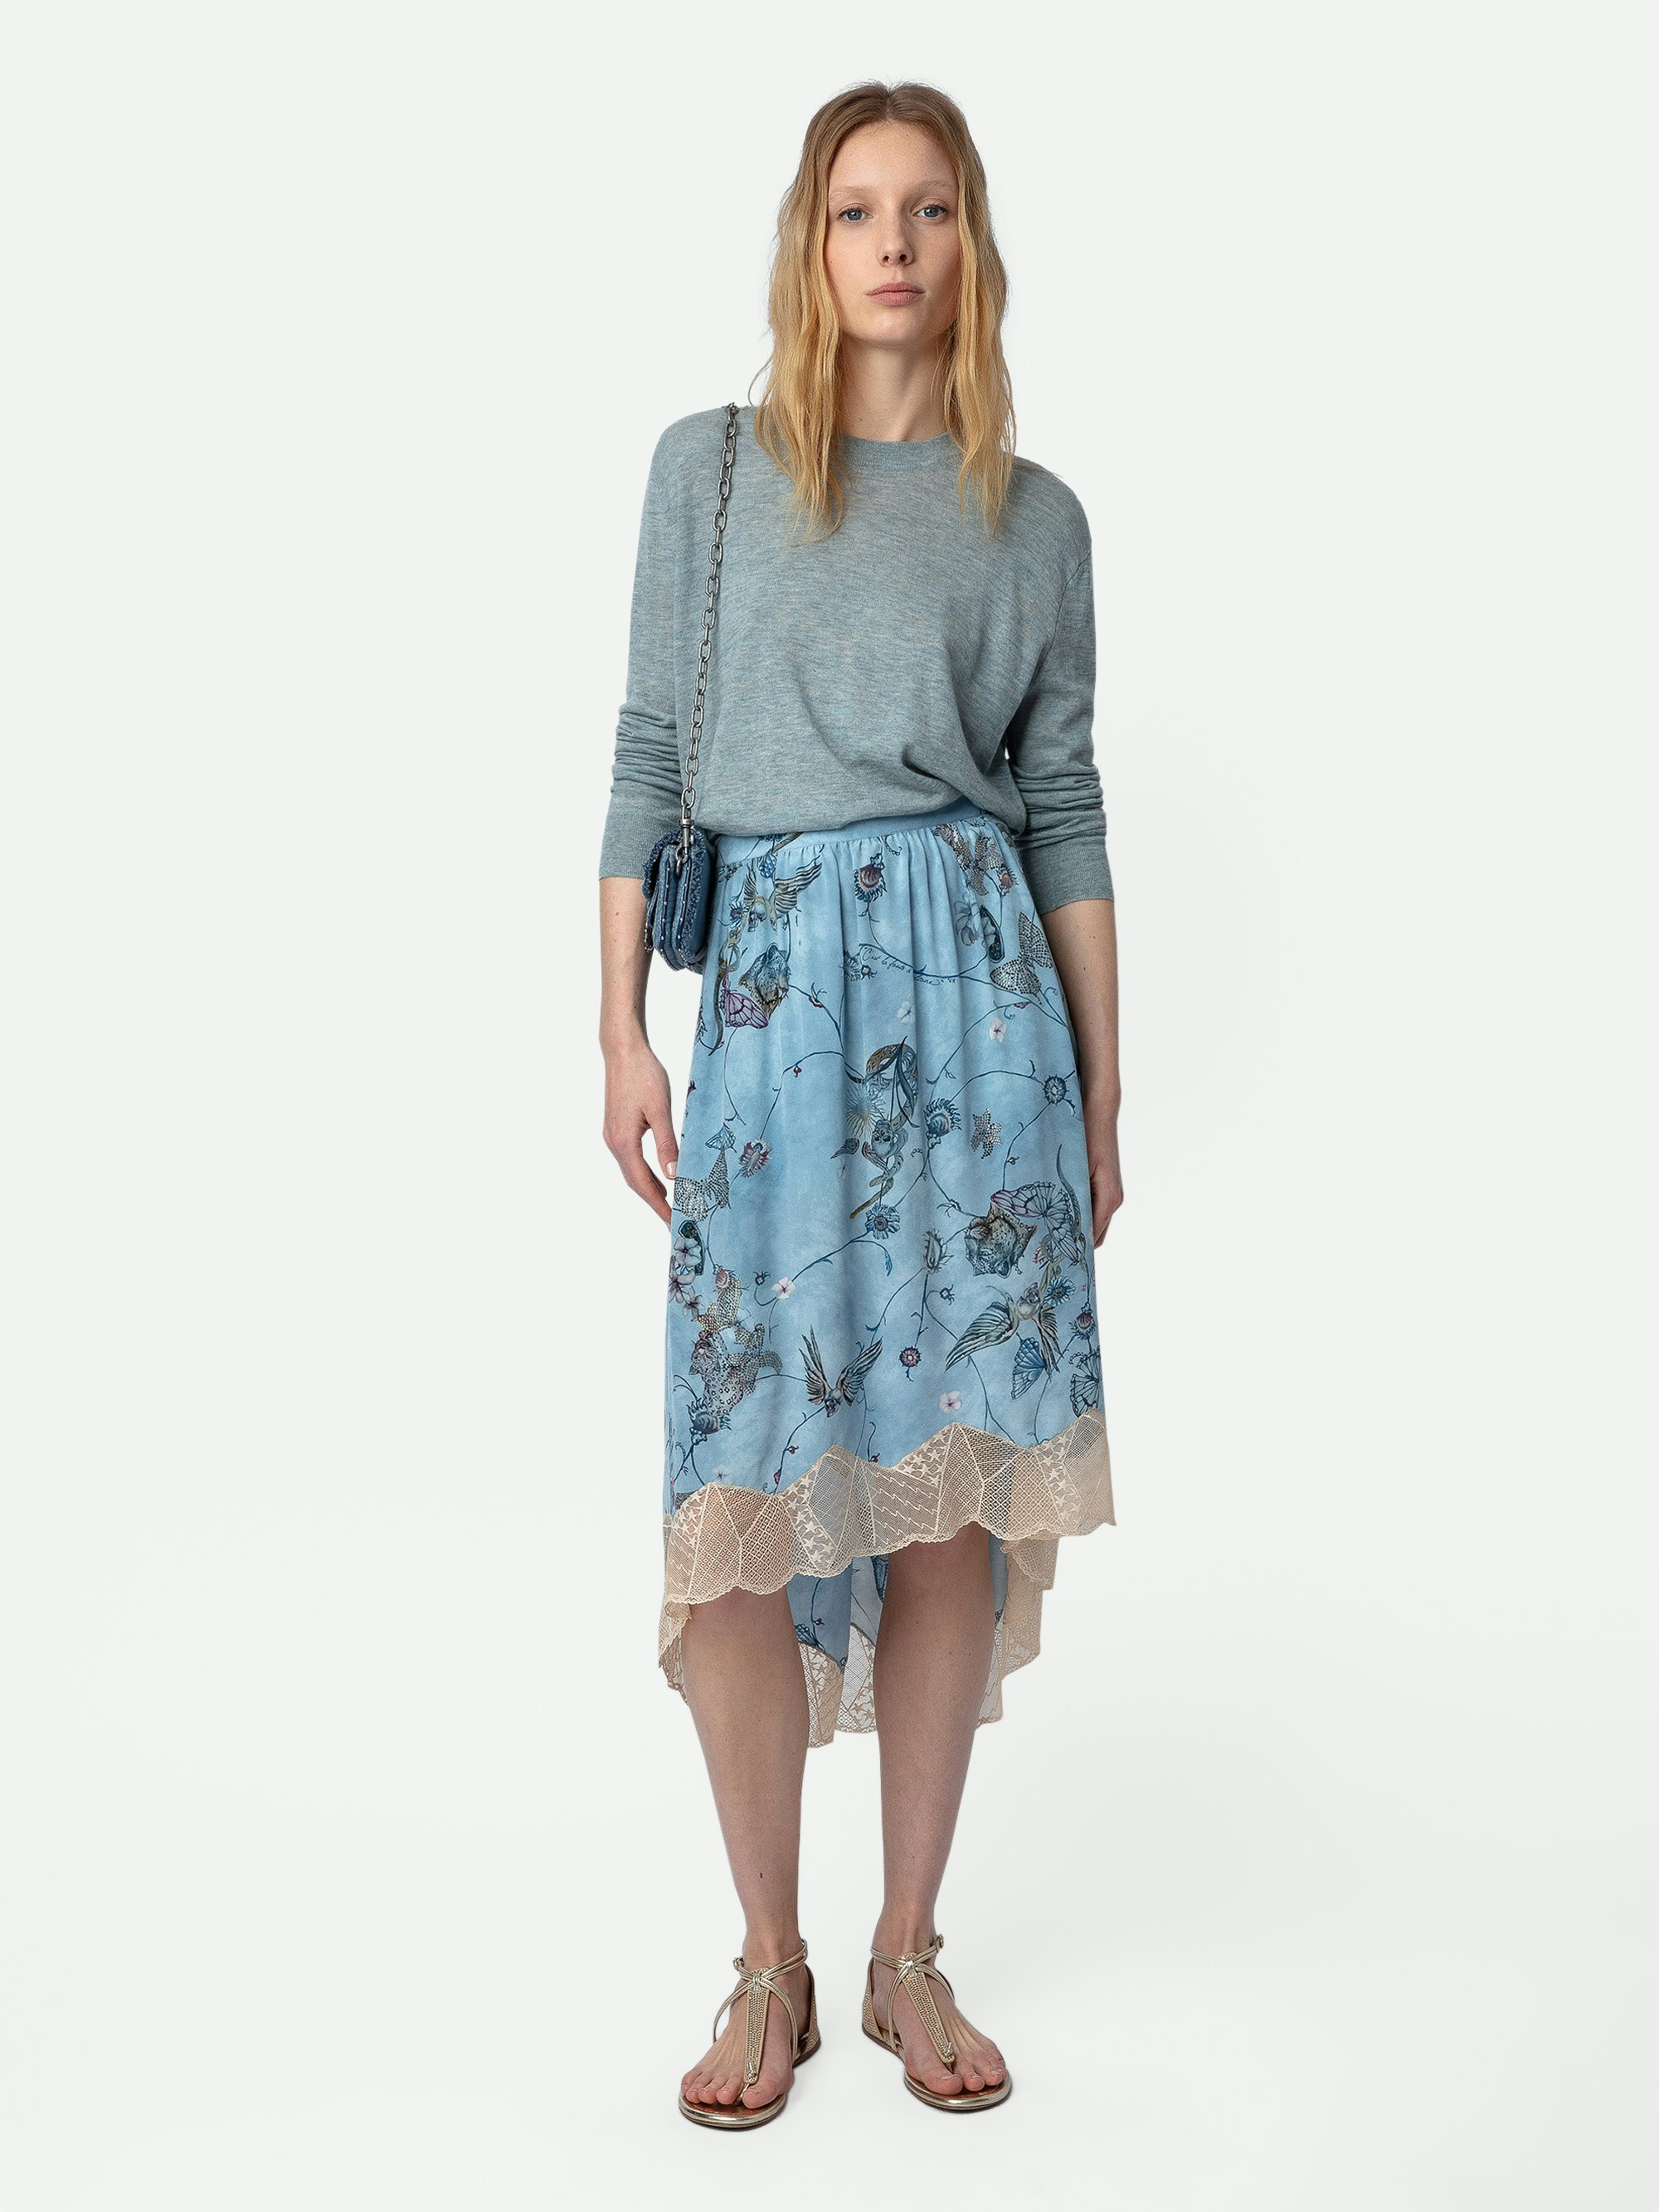 Falda de Seda Joslin Strass - Falda azul asimétrica de seda de estilo lencero de largo medio con estampado, encaje y strass.